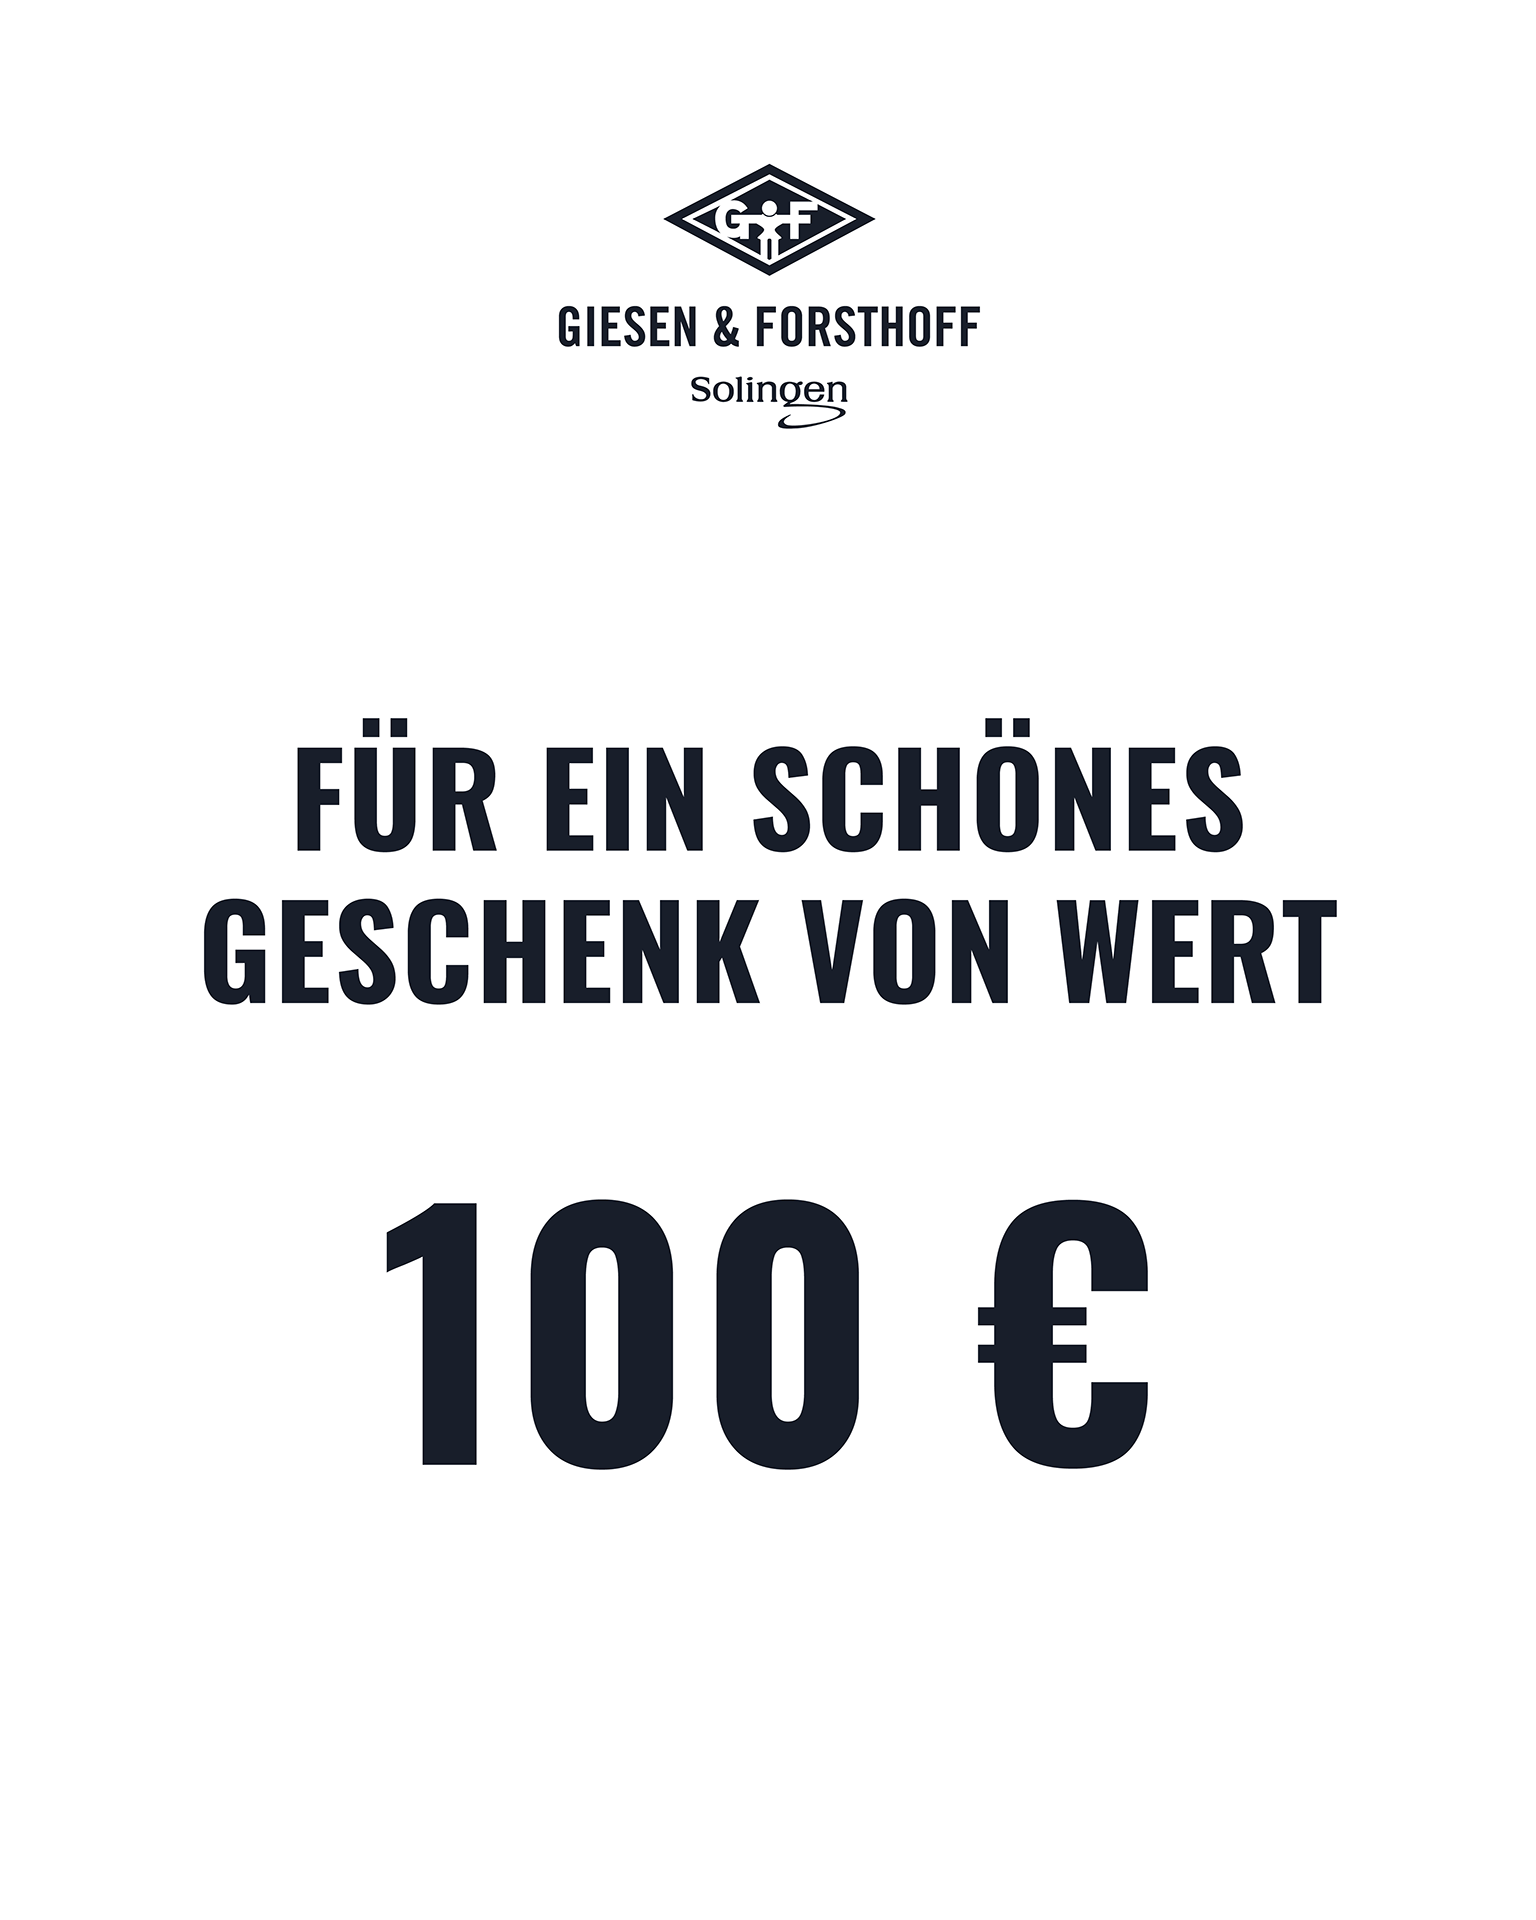 Gutschein 100€